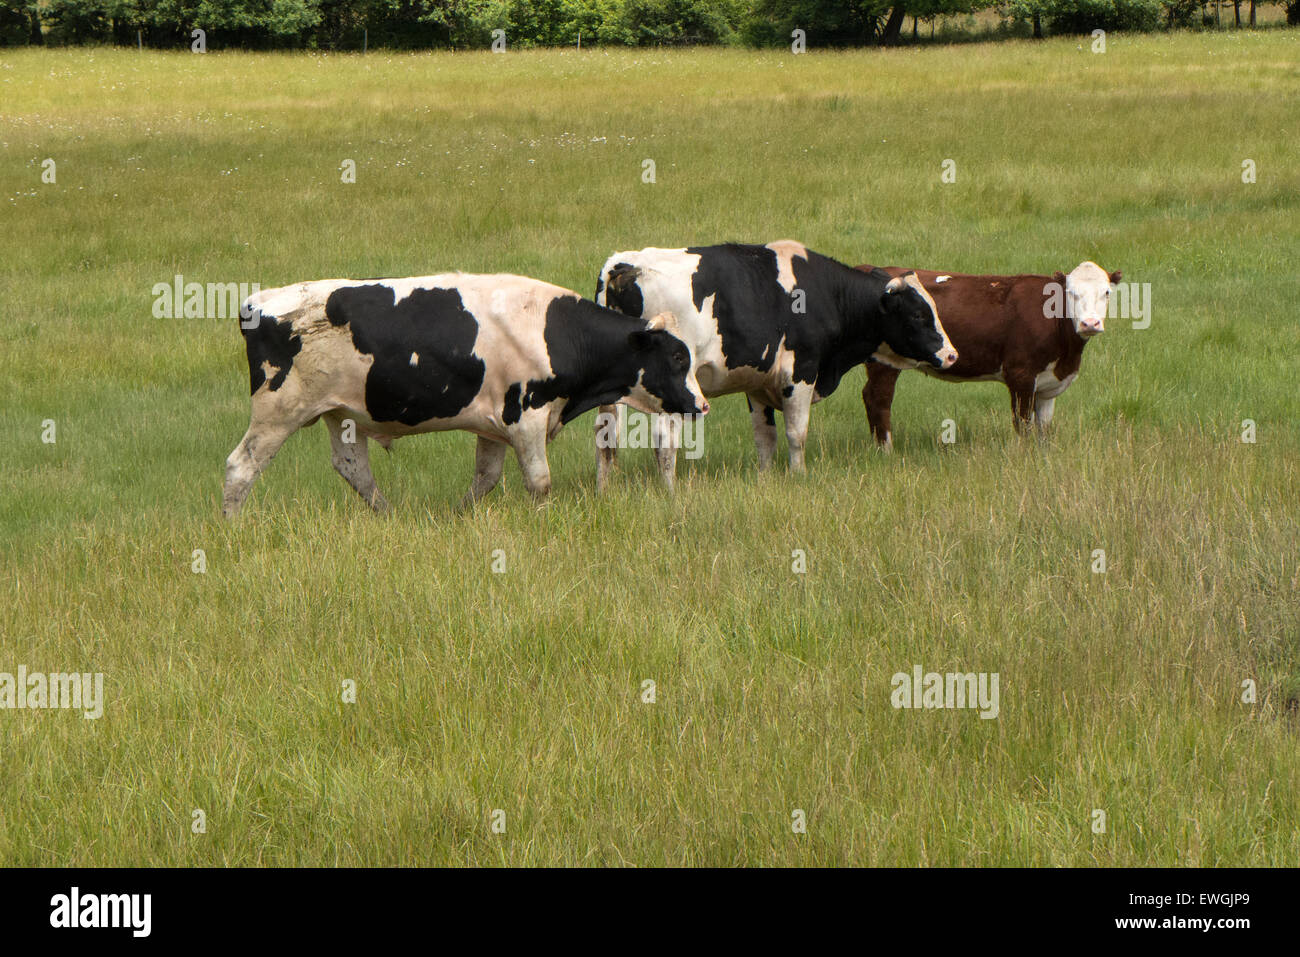 Three bulls in pasture. Stock Photo